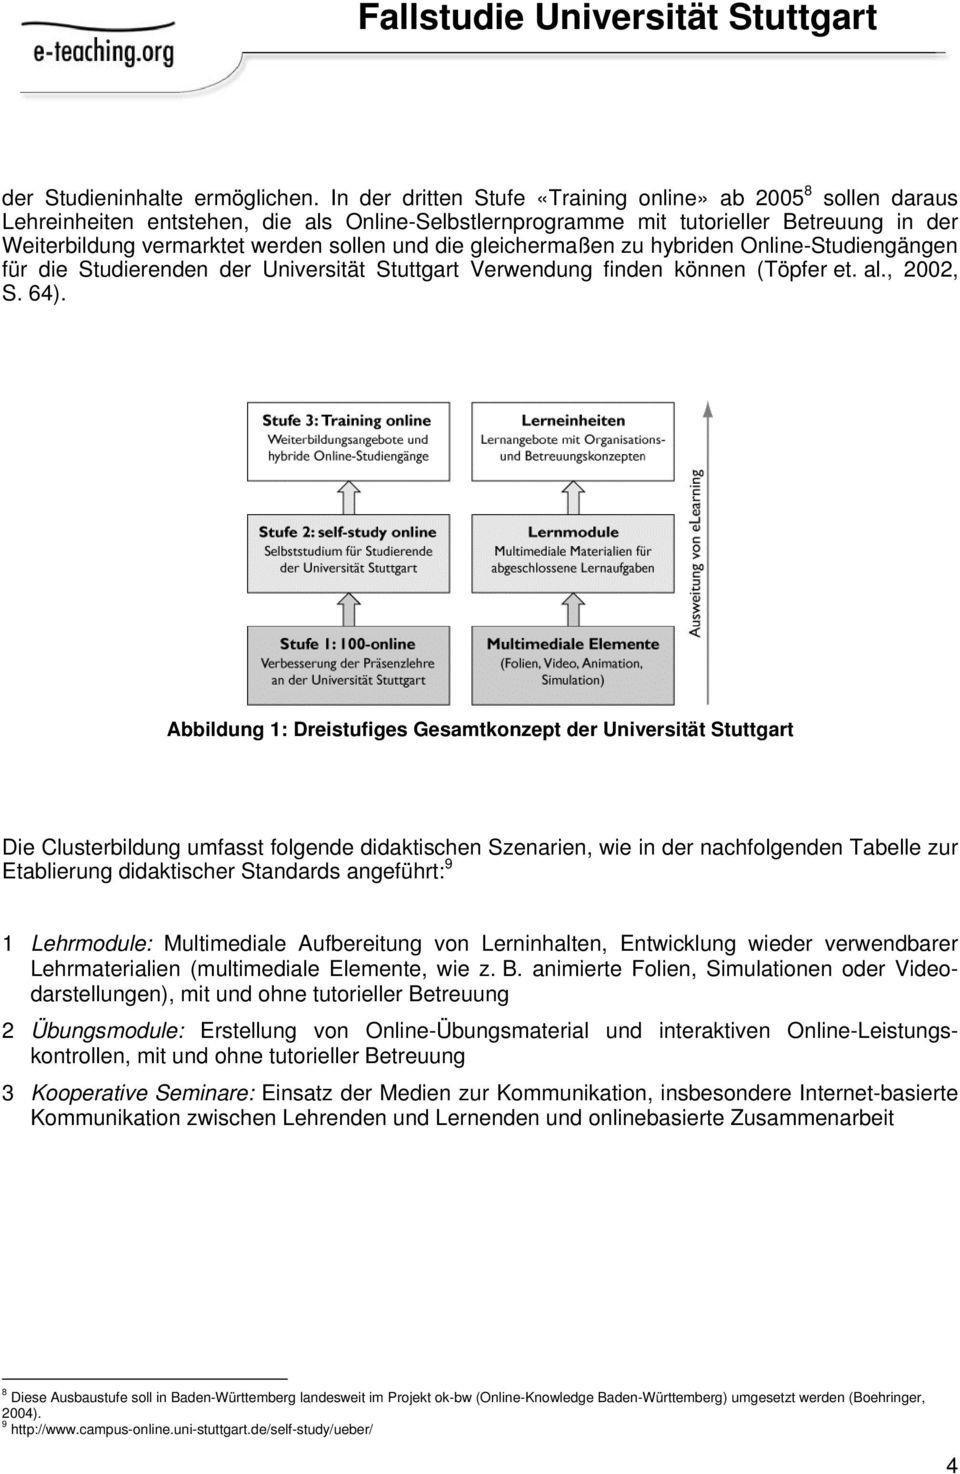 die gleichermaßen zu hybriden Online-Studiengängen für die Studierenden der Universität Stuttgart Verwendung finden können (Töpfer et. al., 2002, S. 64).